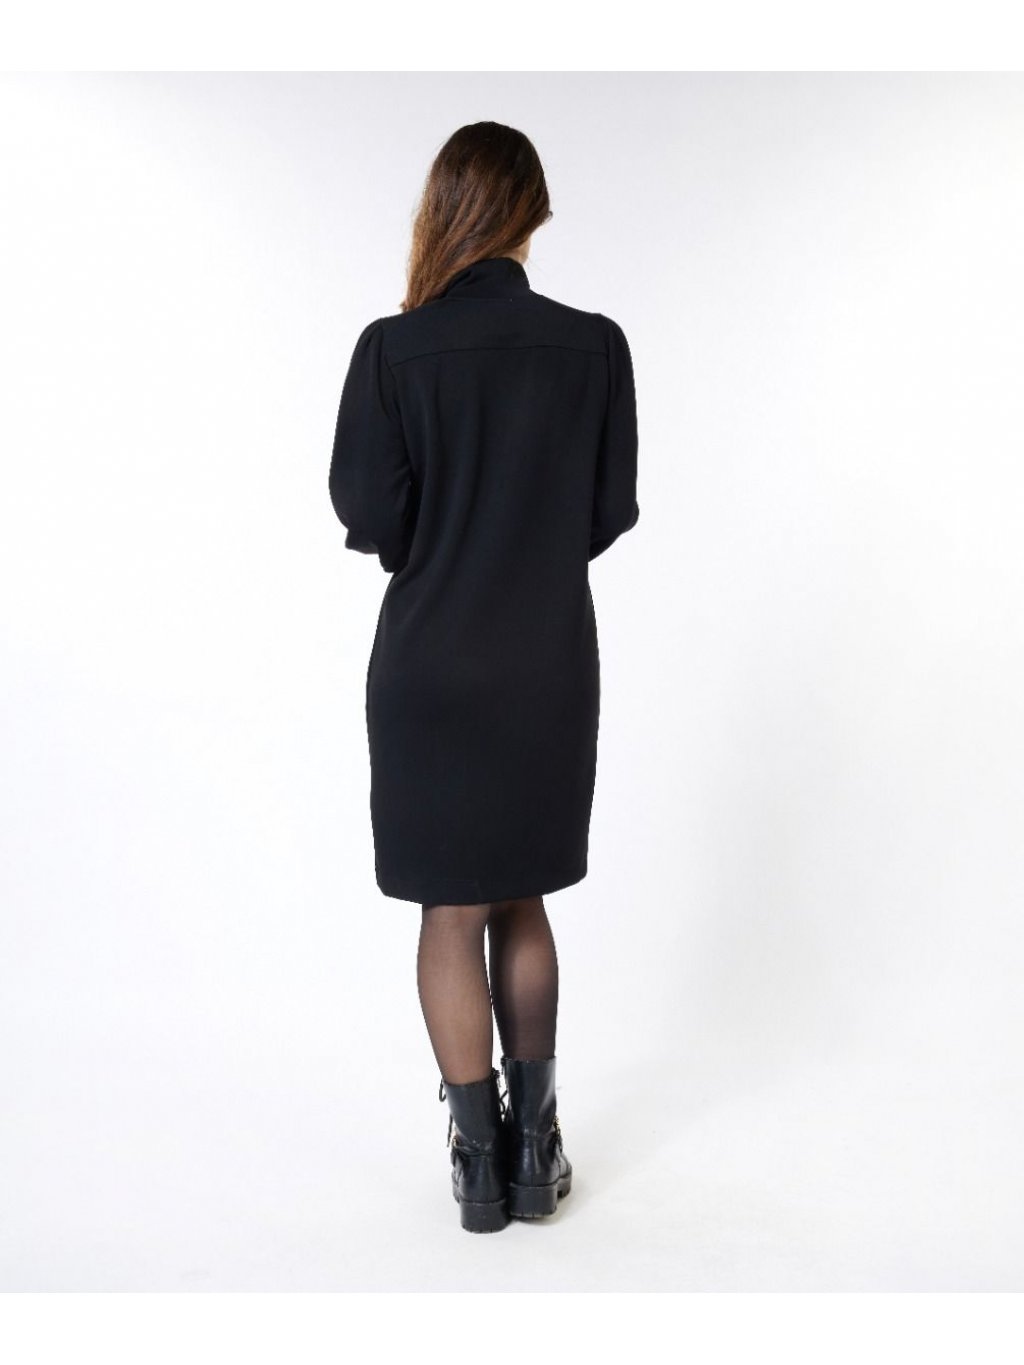 Šaty Esqualo 5500 černé se zipem neoprenové